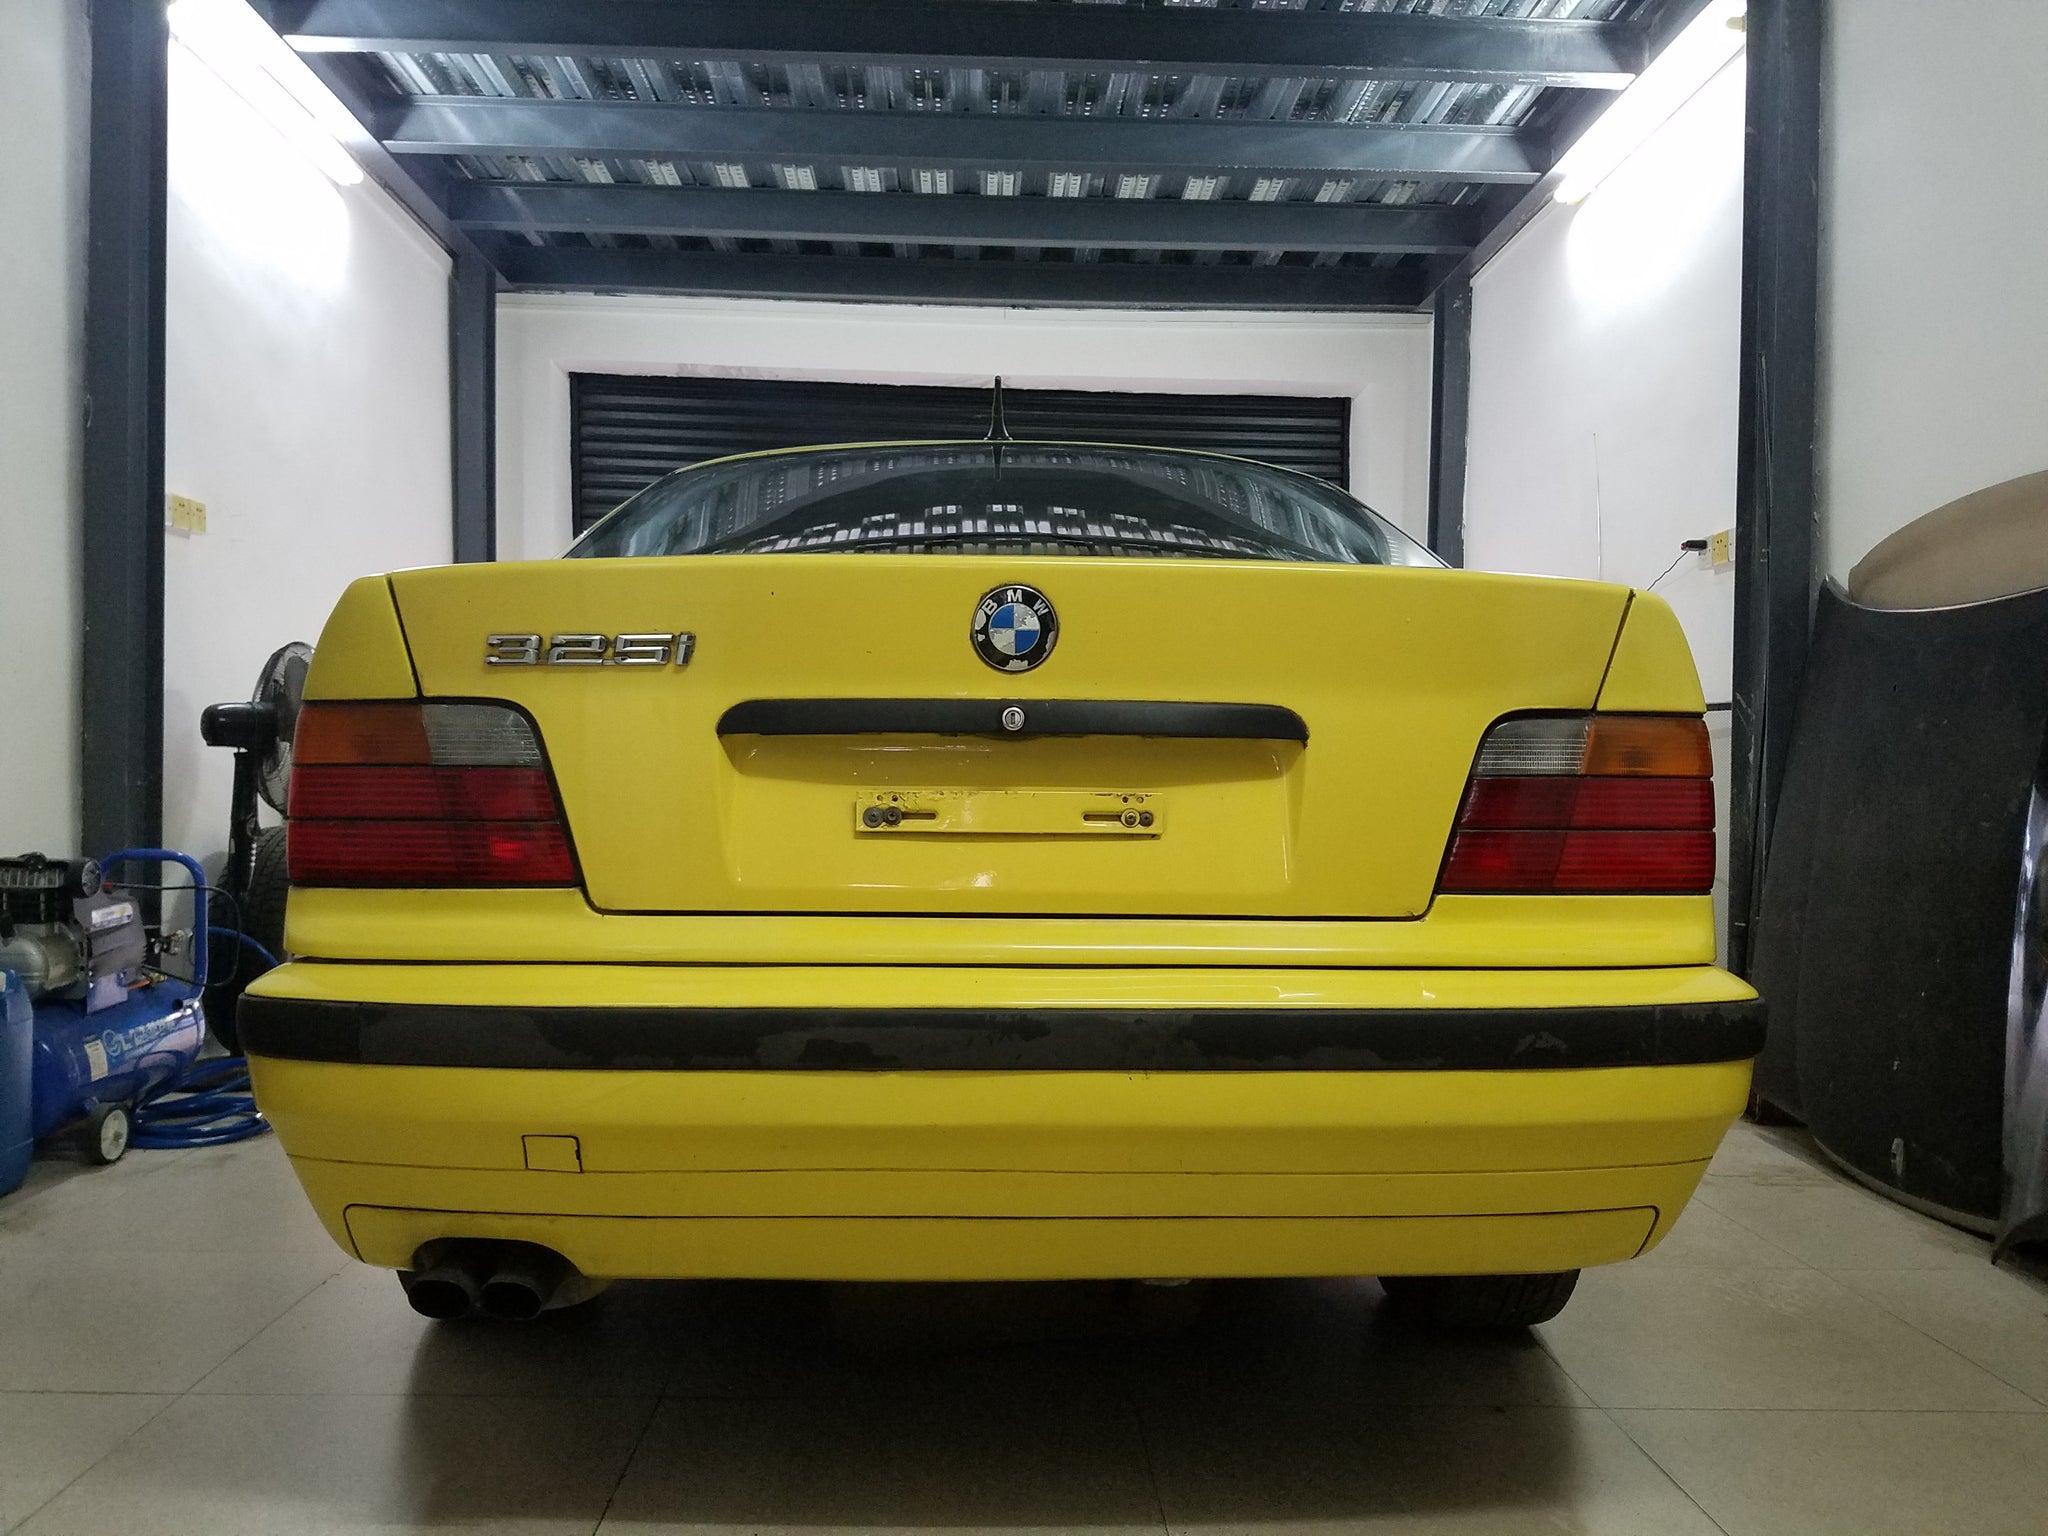 1992 BMW 325i Photo Gallery